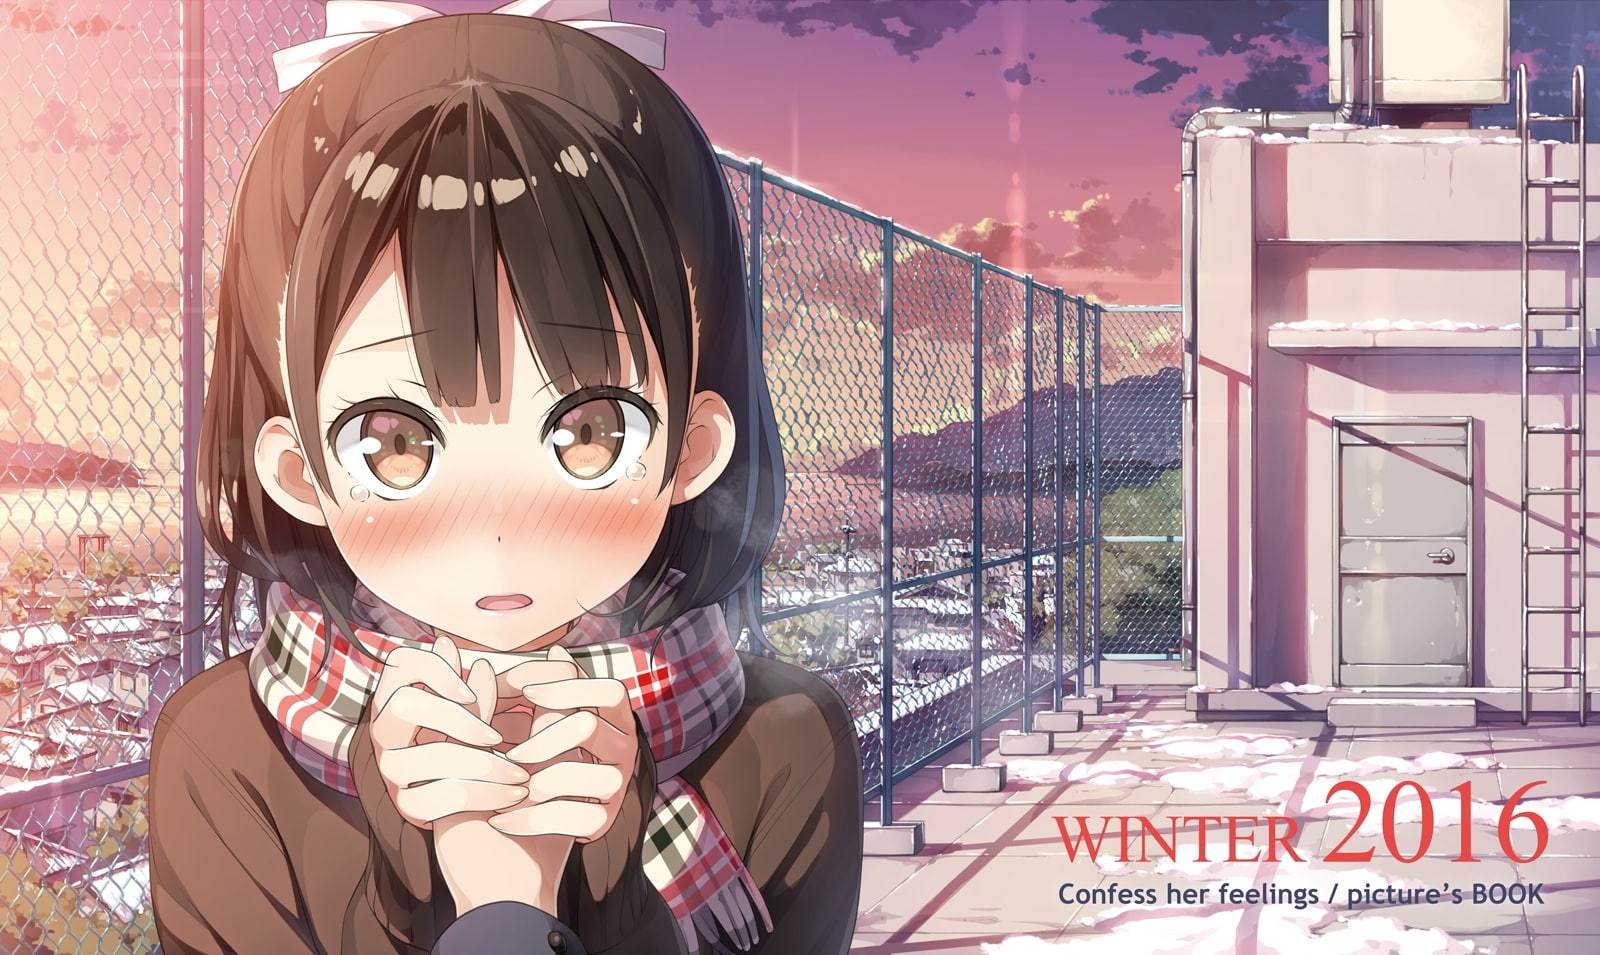 kantoku, anime girl, school rooftop, scenic, sunset, scarf